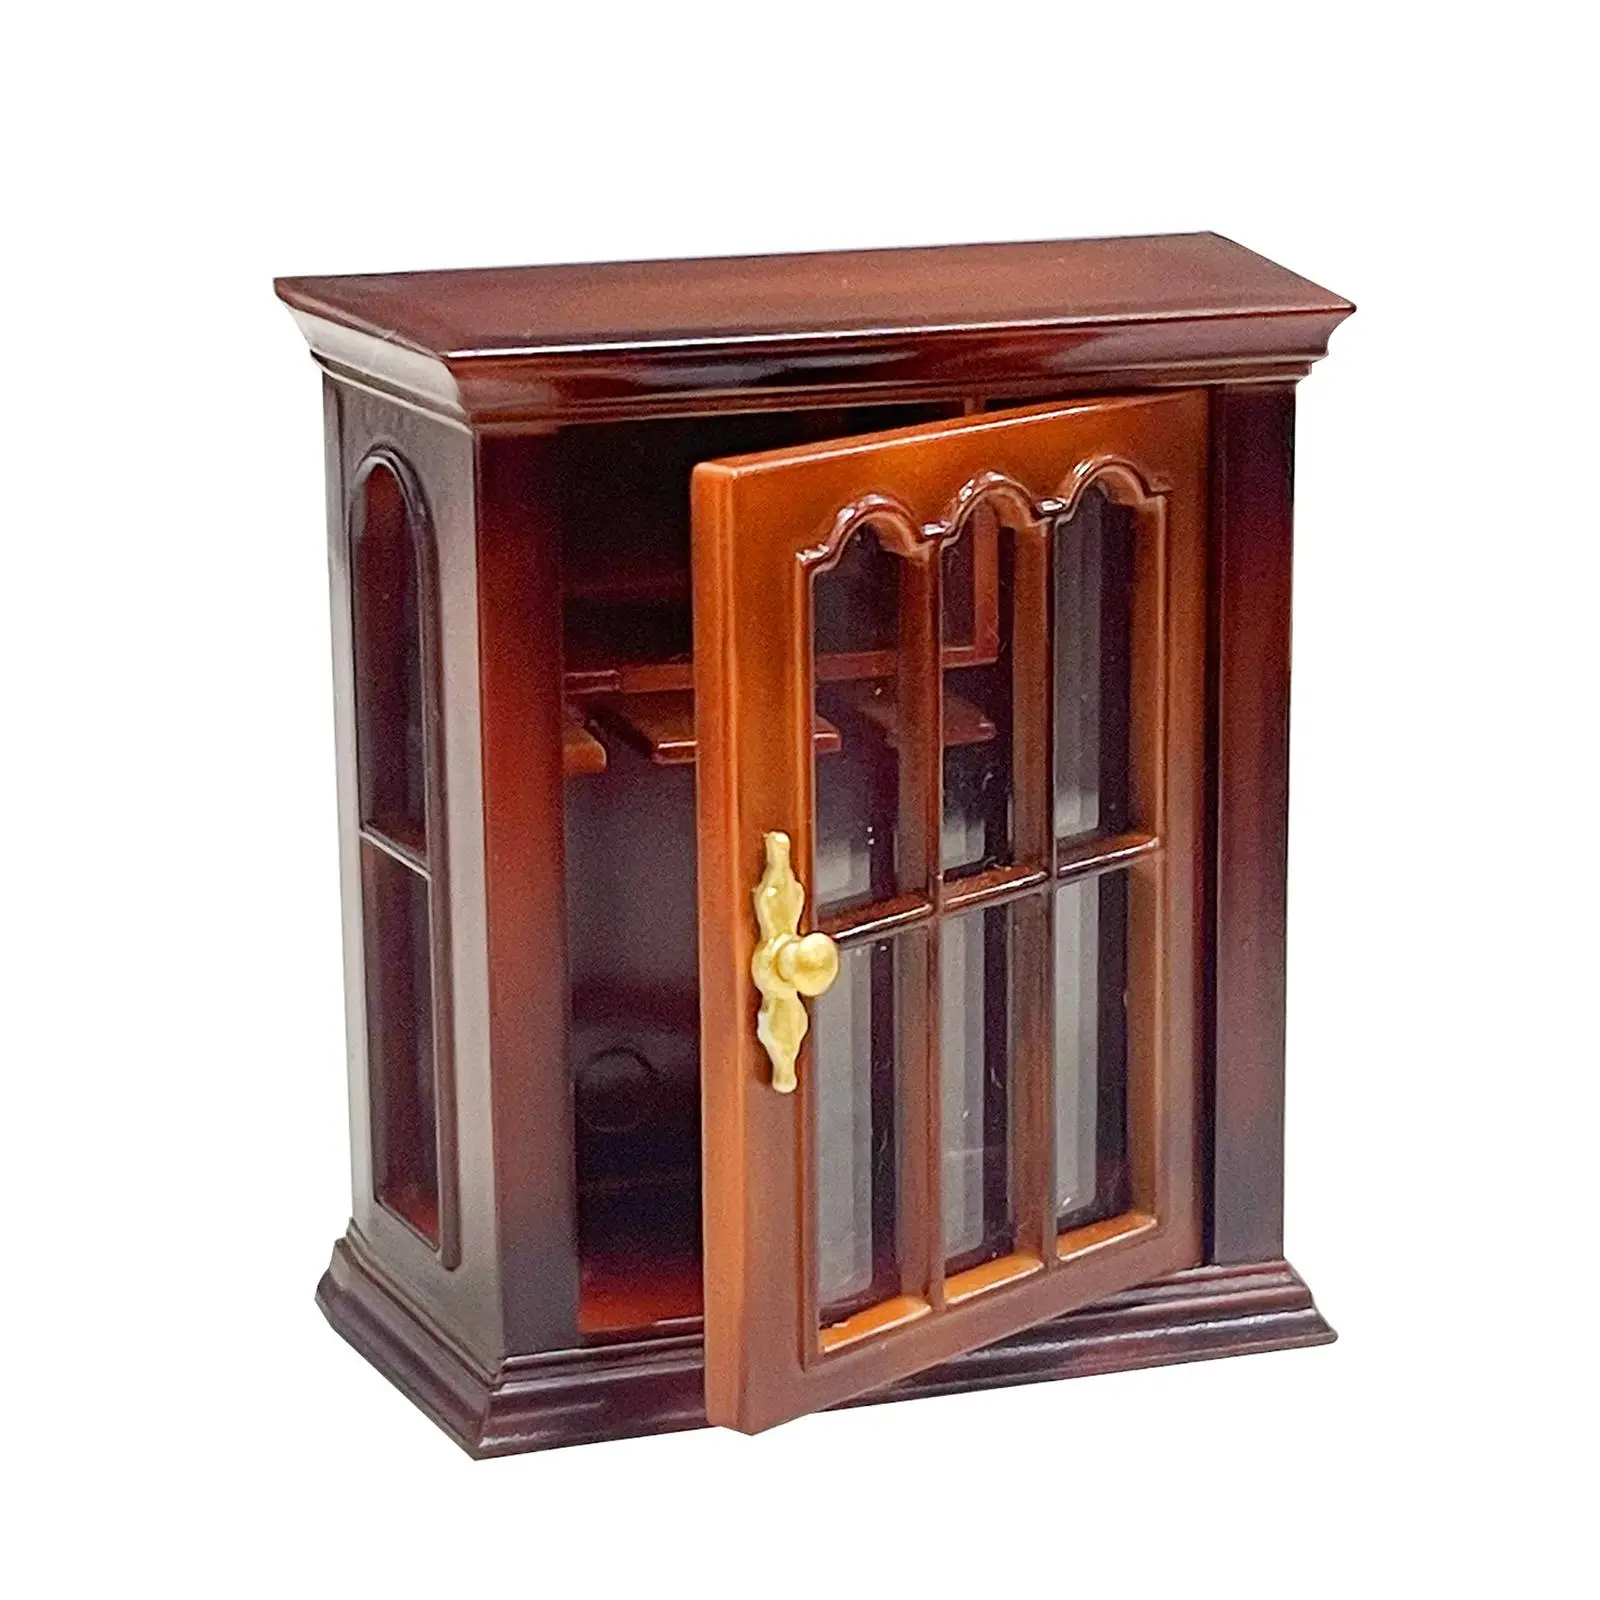 Dollhouse Cabinet Furniture 1:12 Scale Scenery Simulation Bookcase Decor